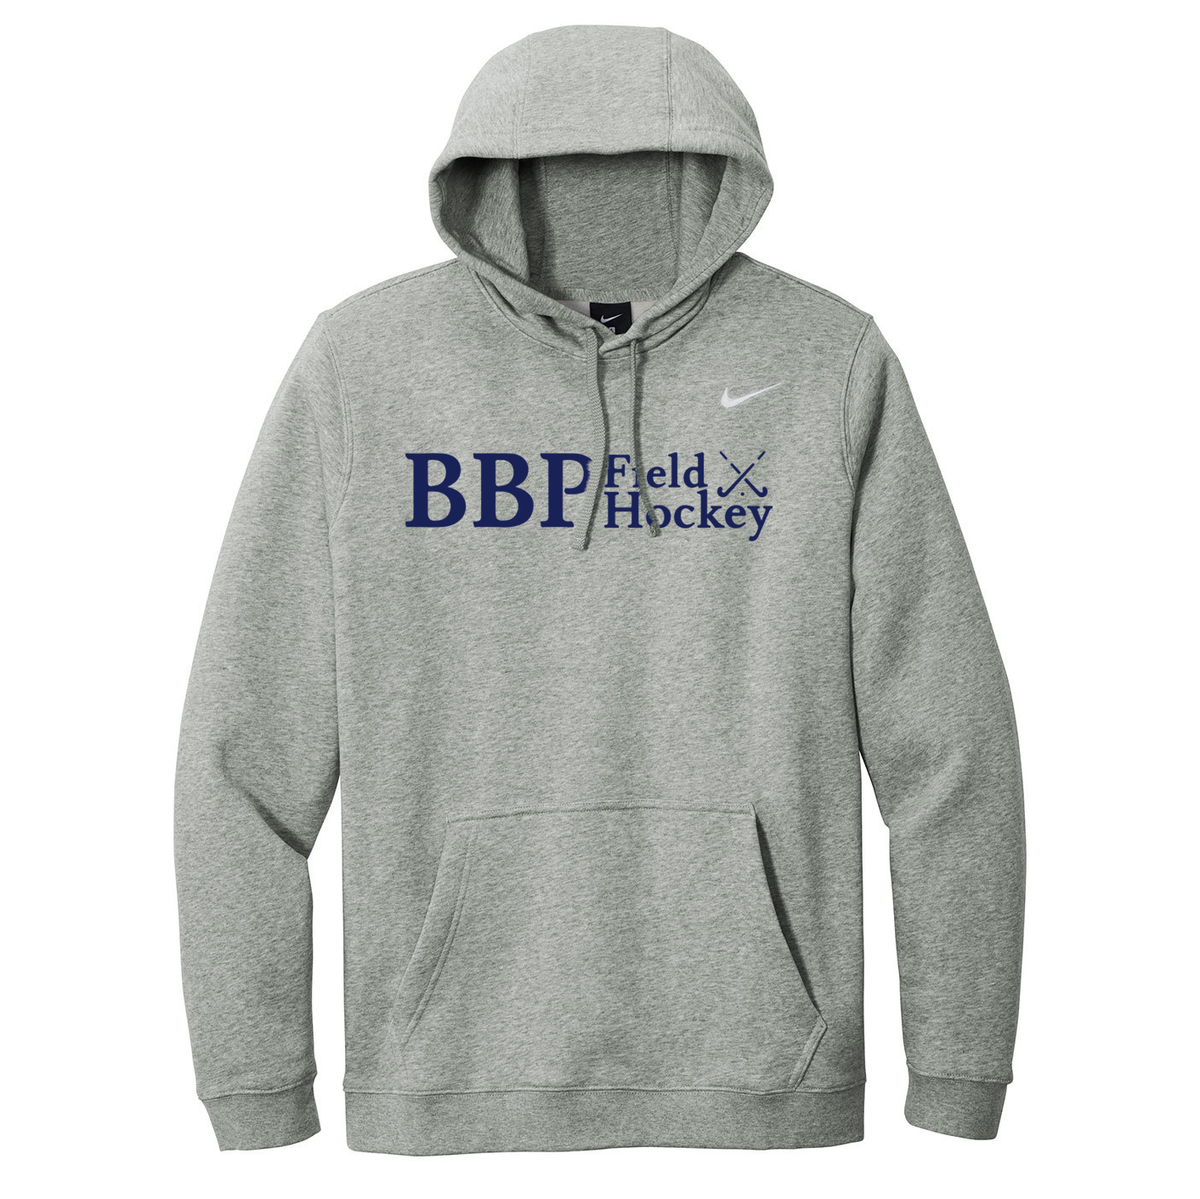 BBP Field Hockey Nike Fleece Sweatshirt